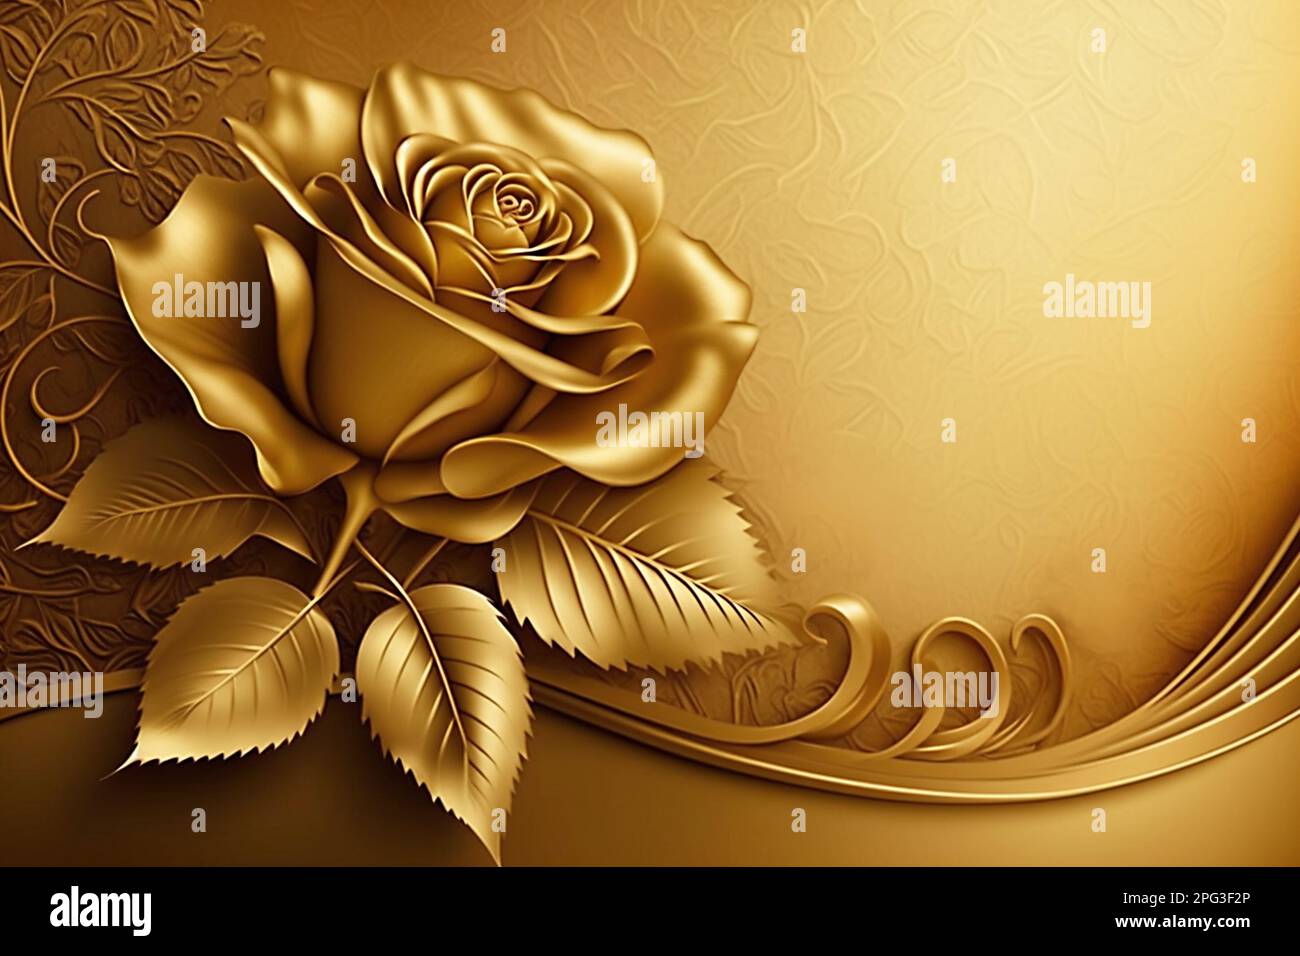 Golden Rose HD Desktop Wallpaper 34604 - Baltana